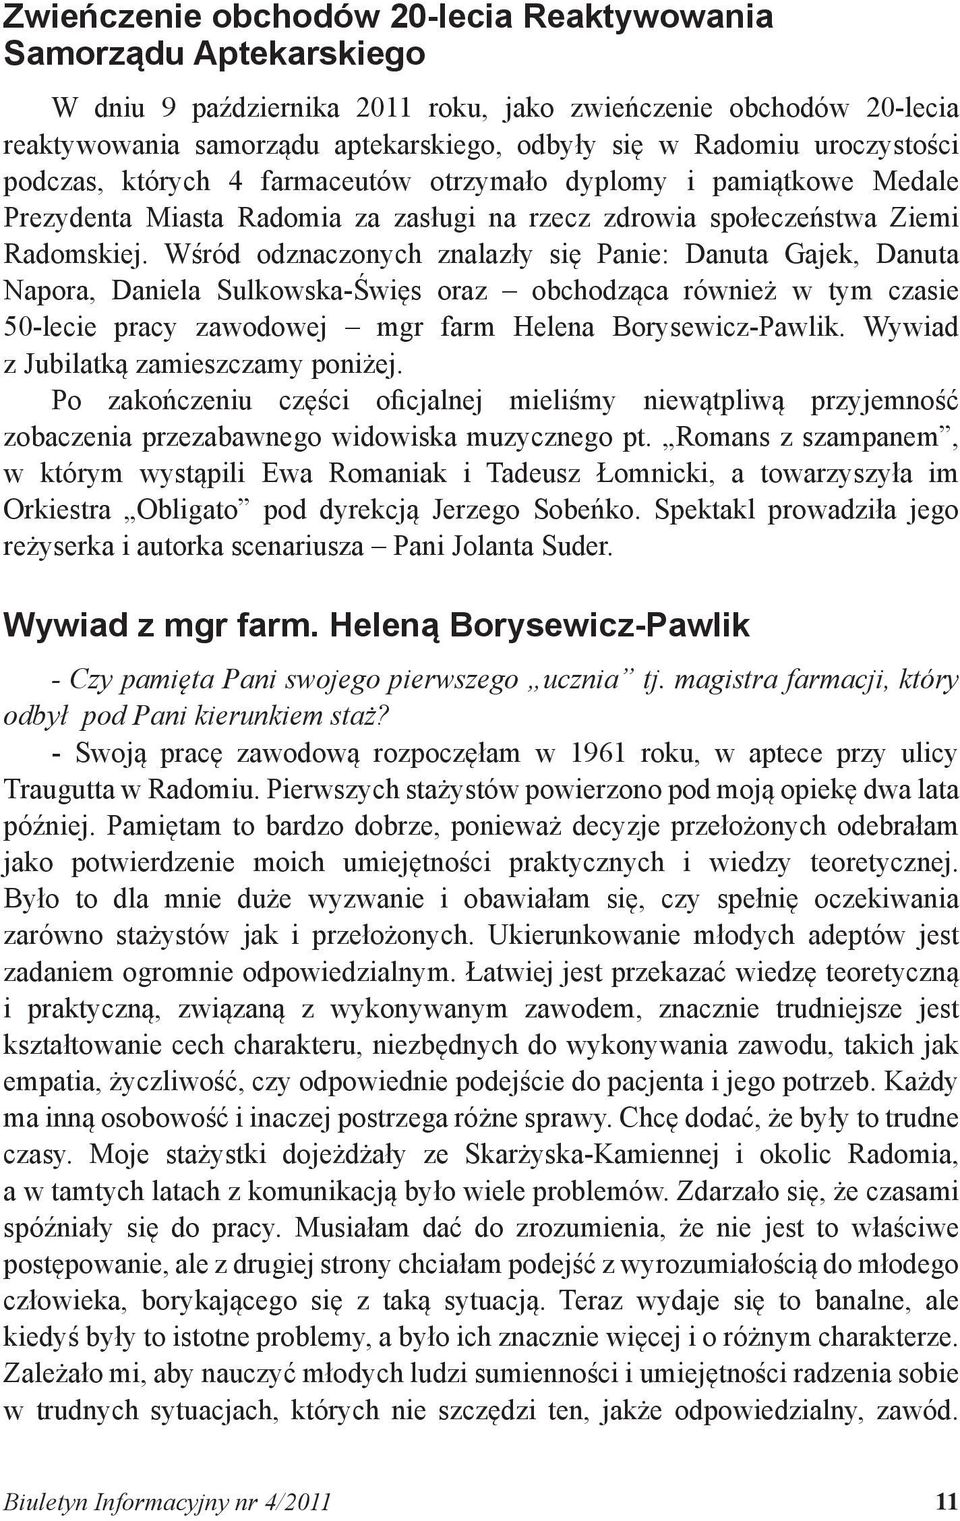 Wśród odznaczonych znalazły się Panie: Danuta Gajek, Danuta Napora, Daniela Sulkowska-Święs oraz obchodząca również w tym czasie 50-lecie pracy zawodowej mgr farm Helena Borysewicz-Pawlik.